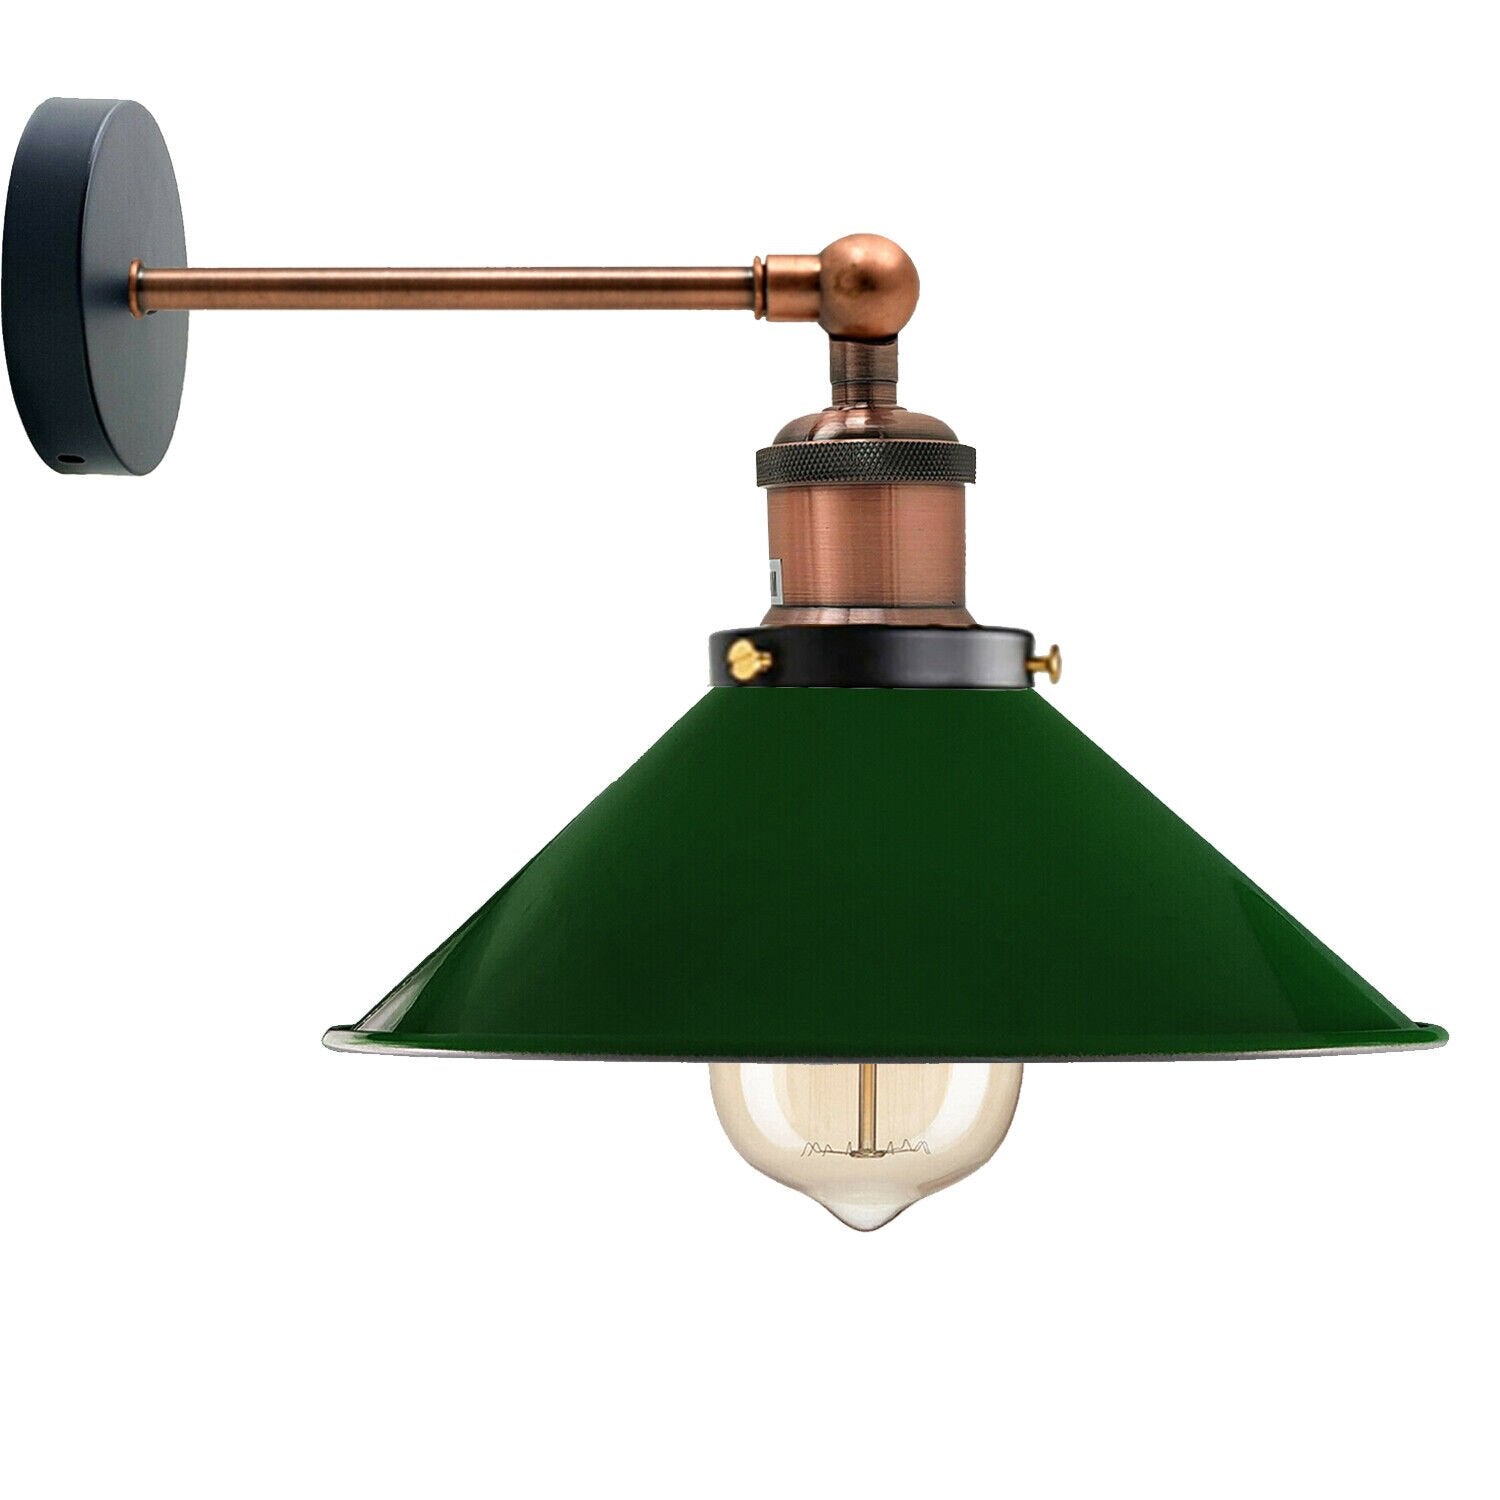 Green Metal Cone Wall Scones Lamp.JPG